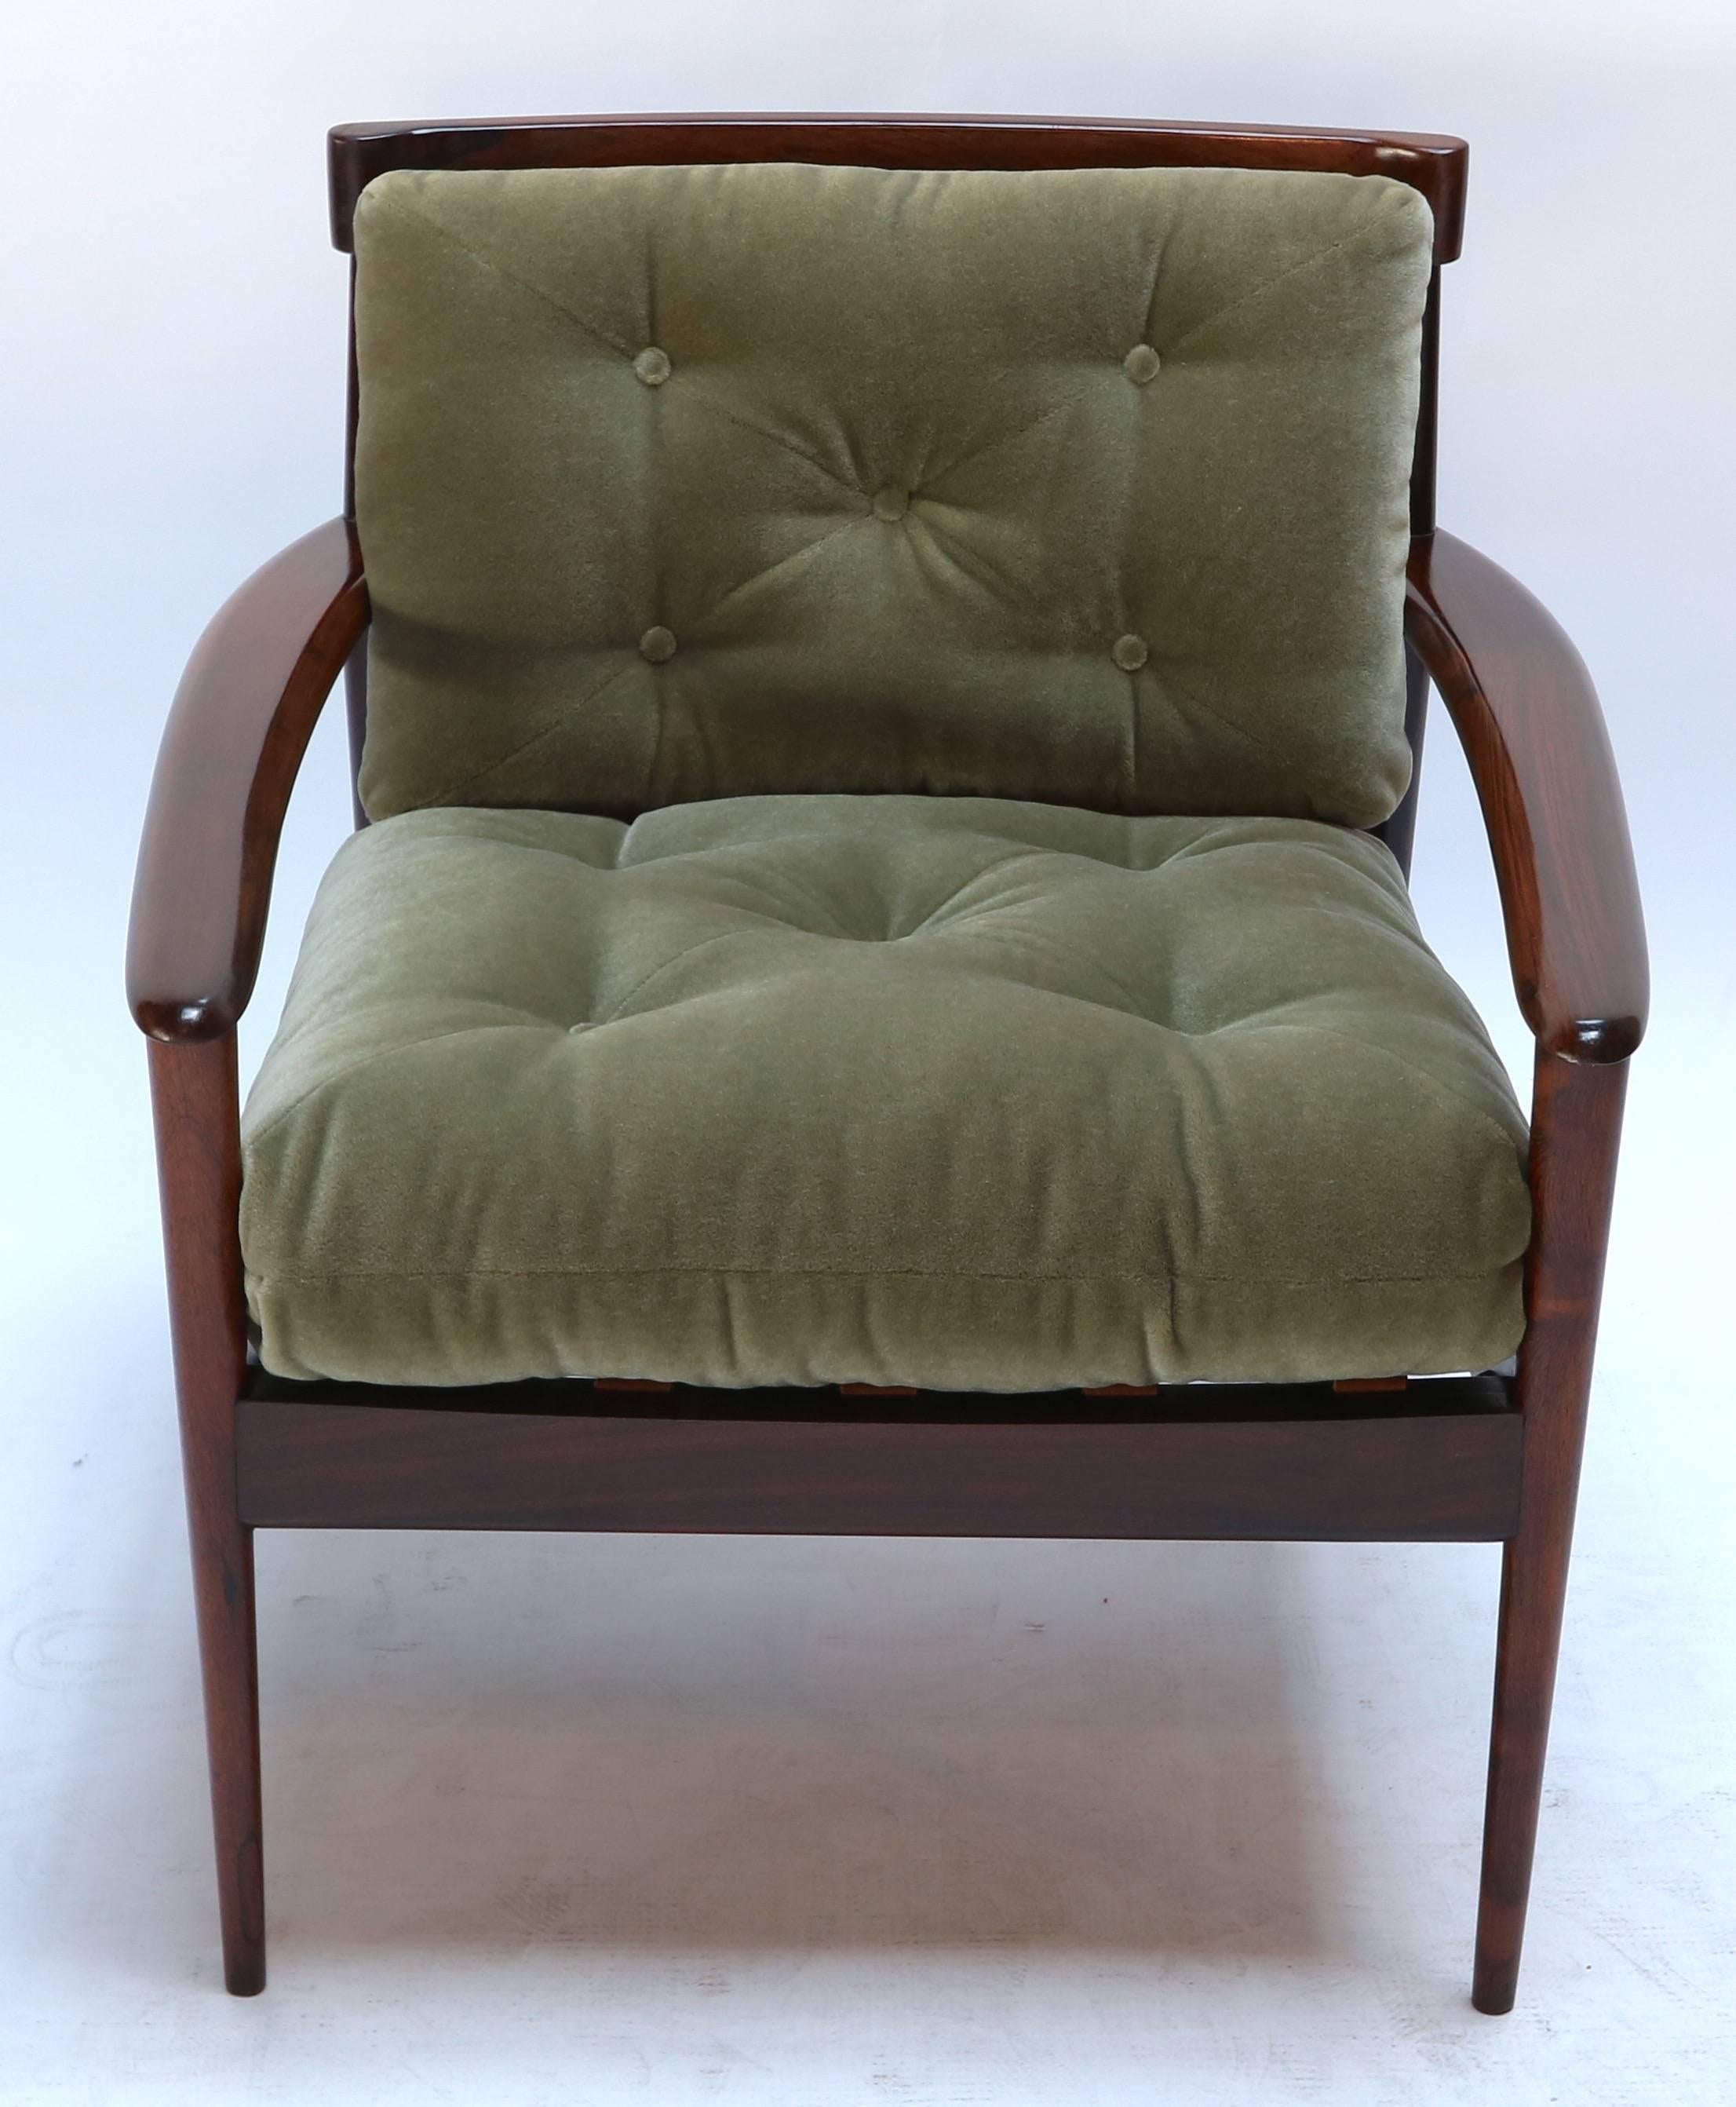 Paire de fauteuils Rino Levi en bois de jacaranda brésilien des années 1960, tapissés de mohair vert.

